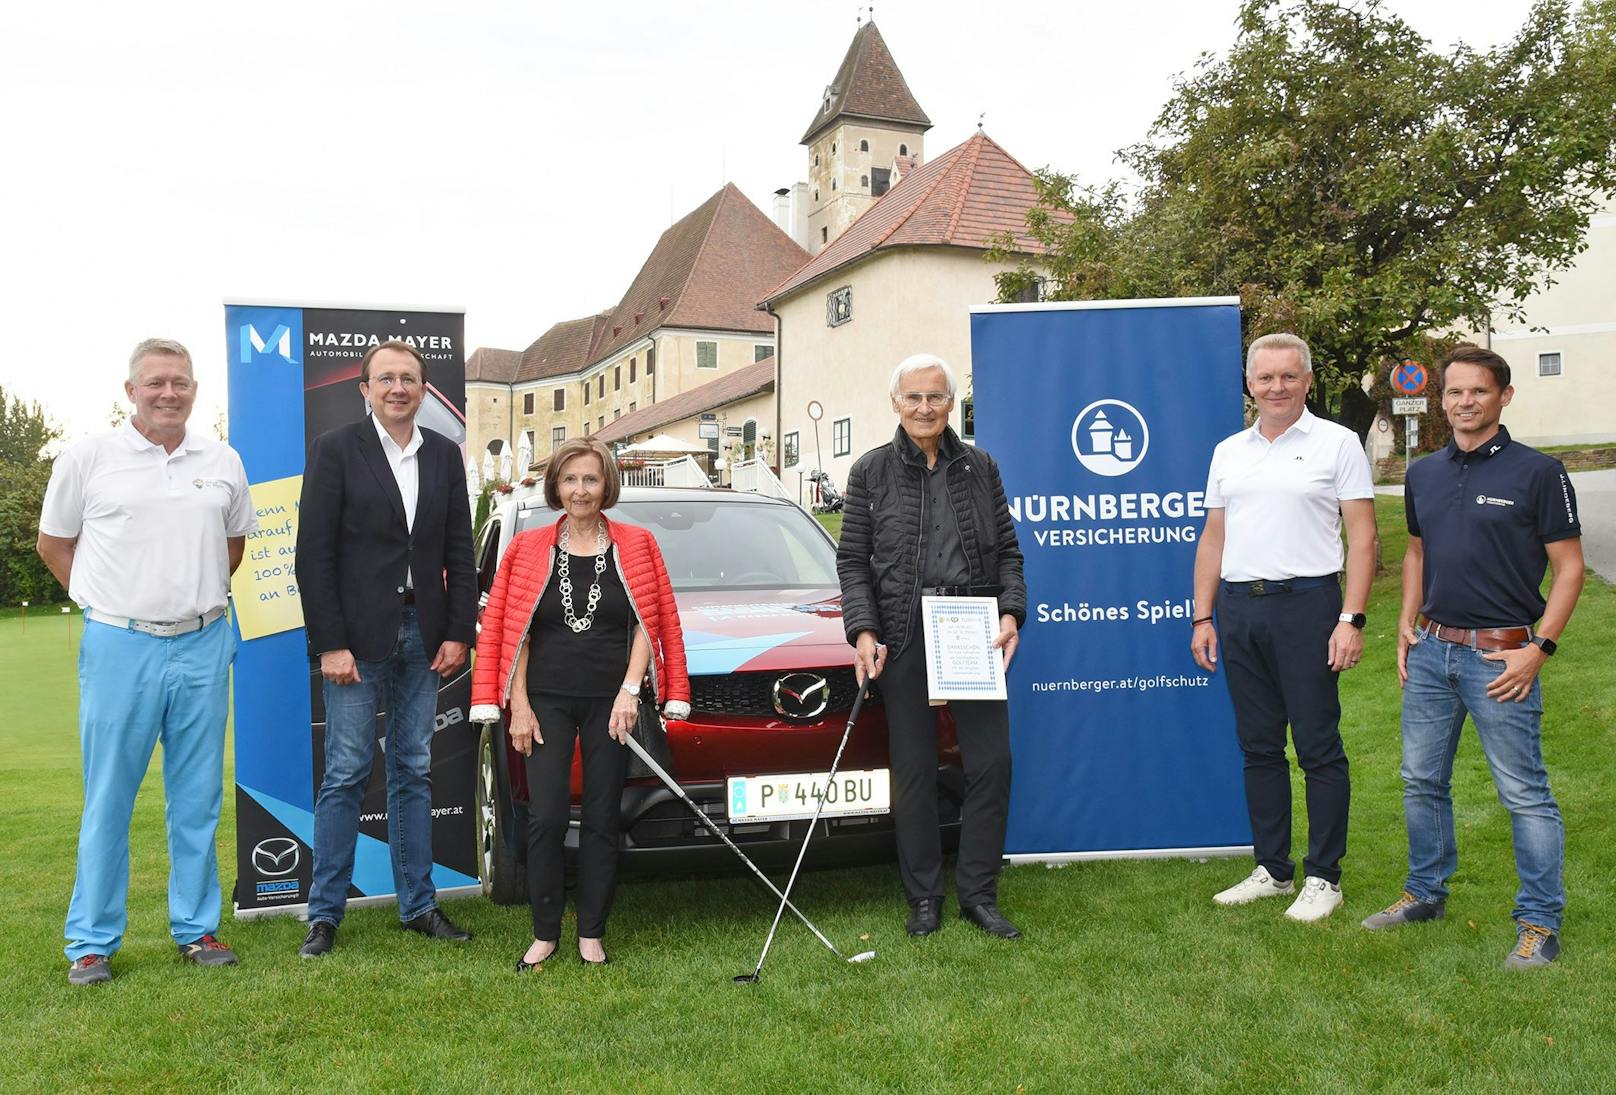 Turnier-Organisator Michael Walterskirchen sowie Bürgermeister Matthias Stadler gratulierten Kurt und Ingrid Wippl zum nagelneuen Mazda, bereitgestellt durch Franz Mayer (Mazda Mayer) und Christian Winkler (Nürnberger Versicherung).